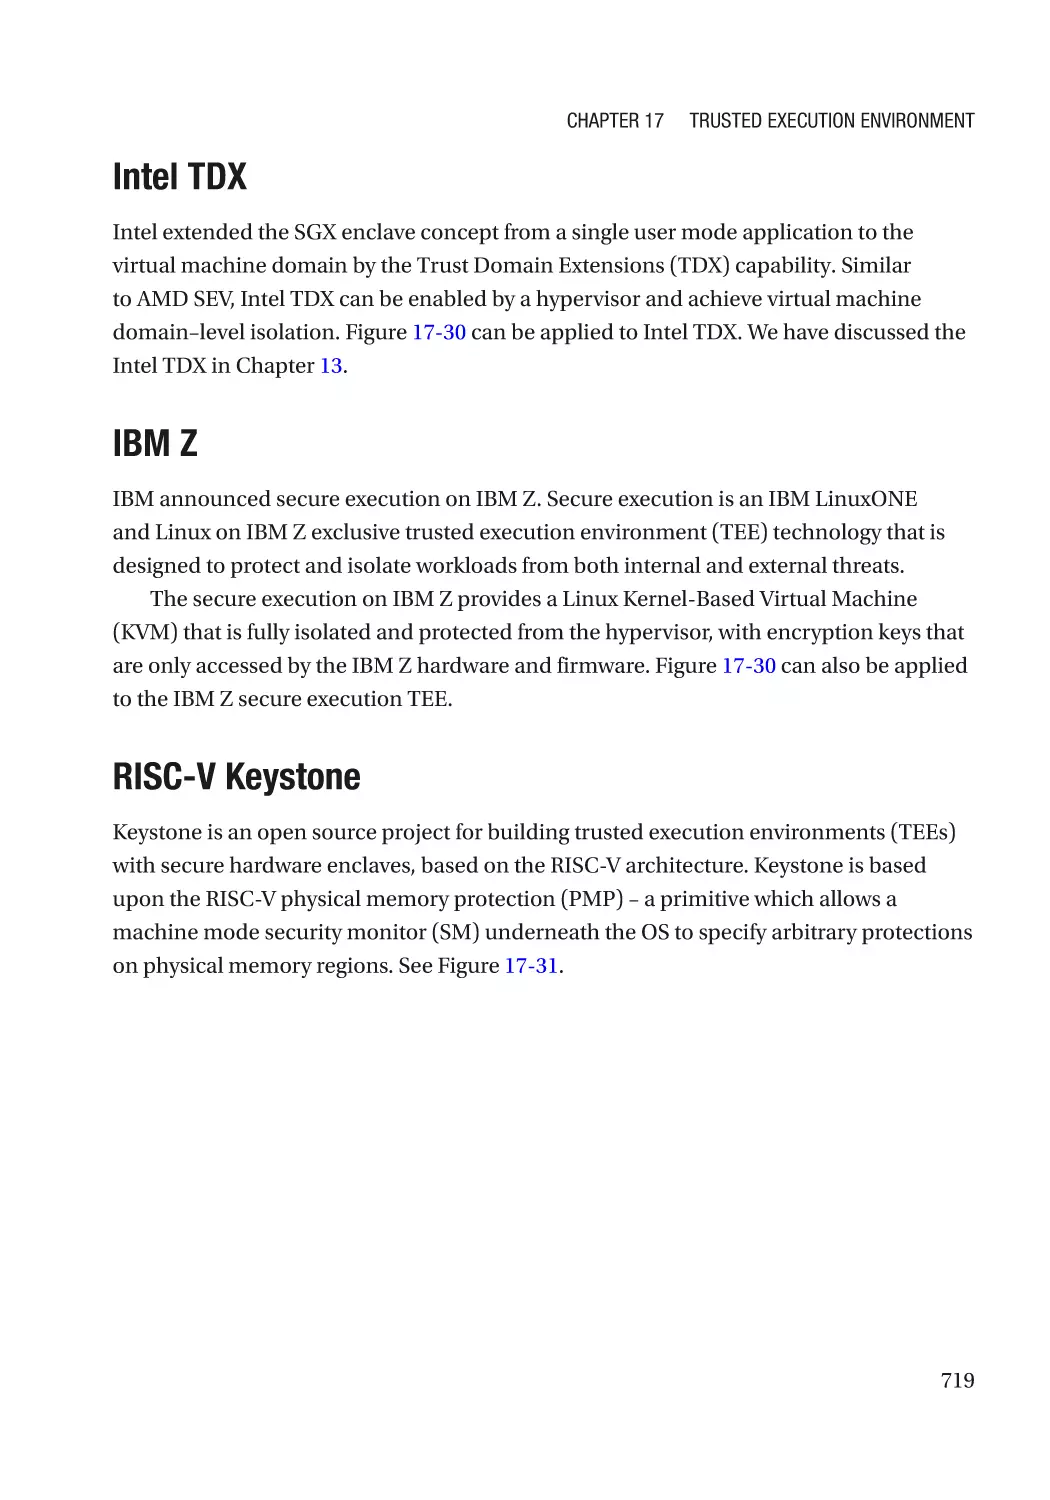 Intel TDX
IBM Z
RISC-V Keystone